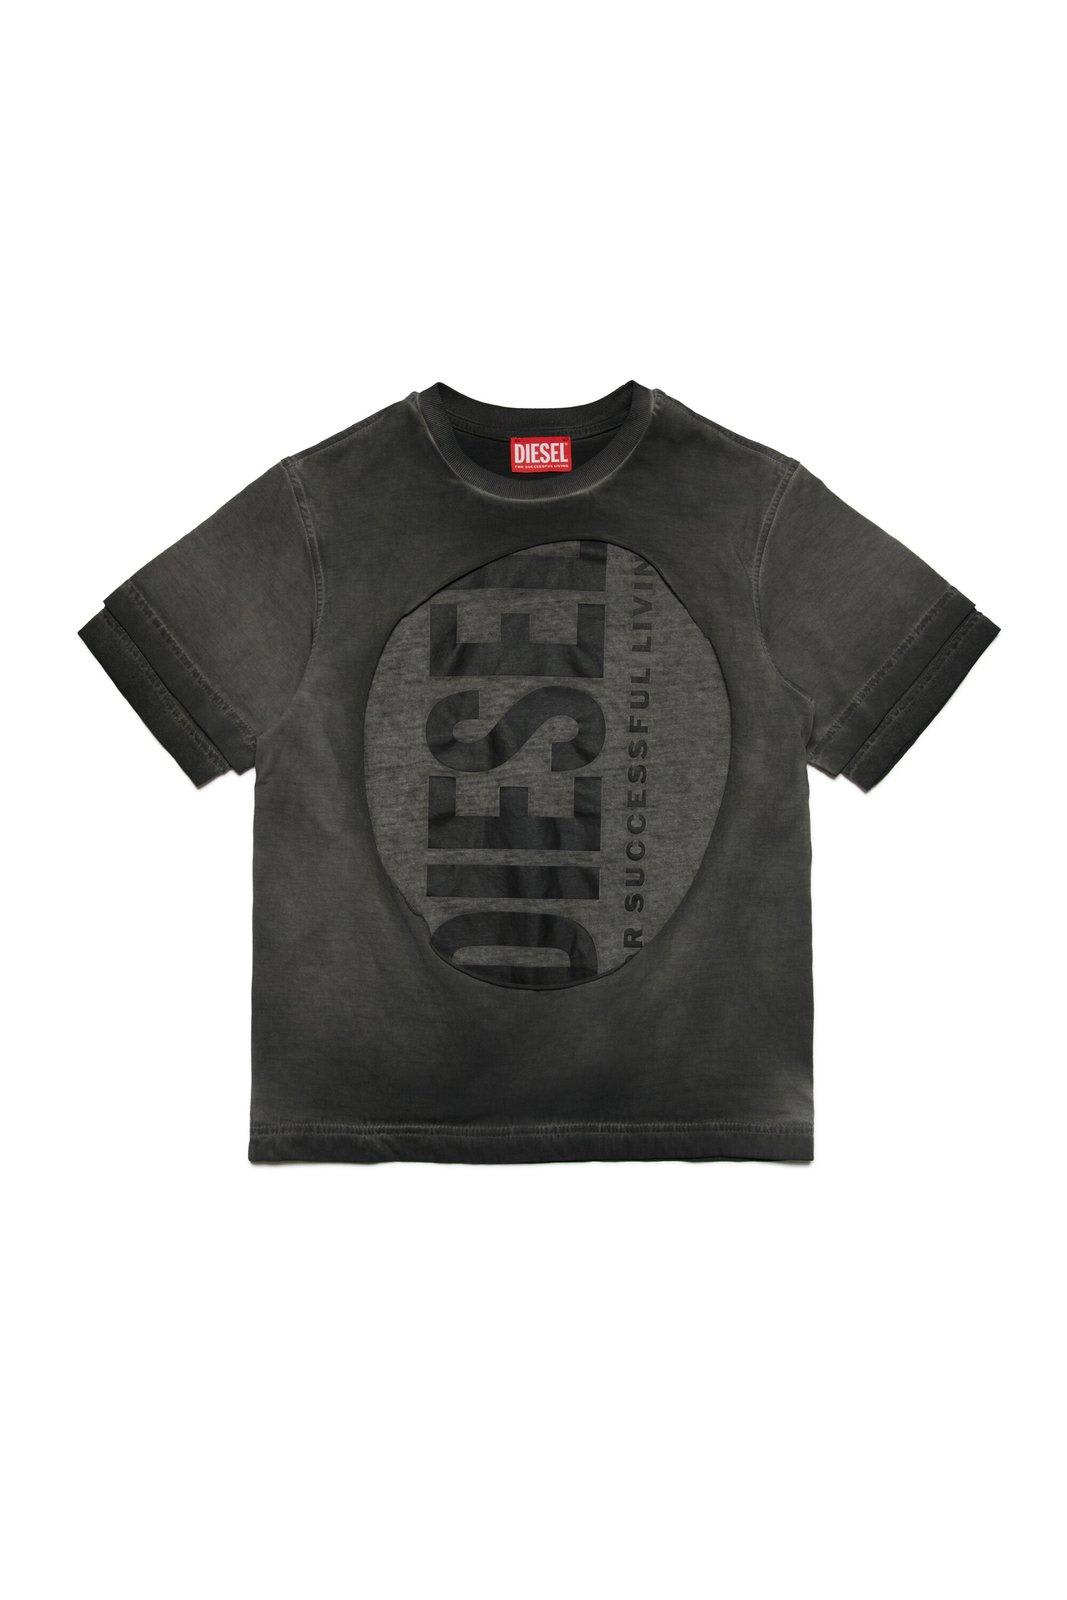 Shop Diesel Tasy Over T-shirt